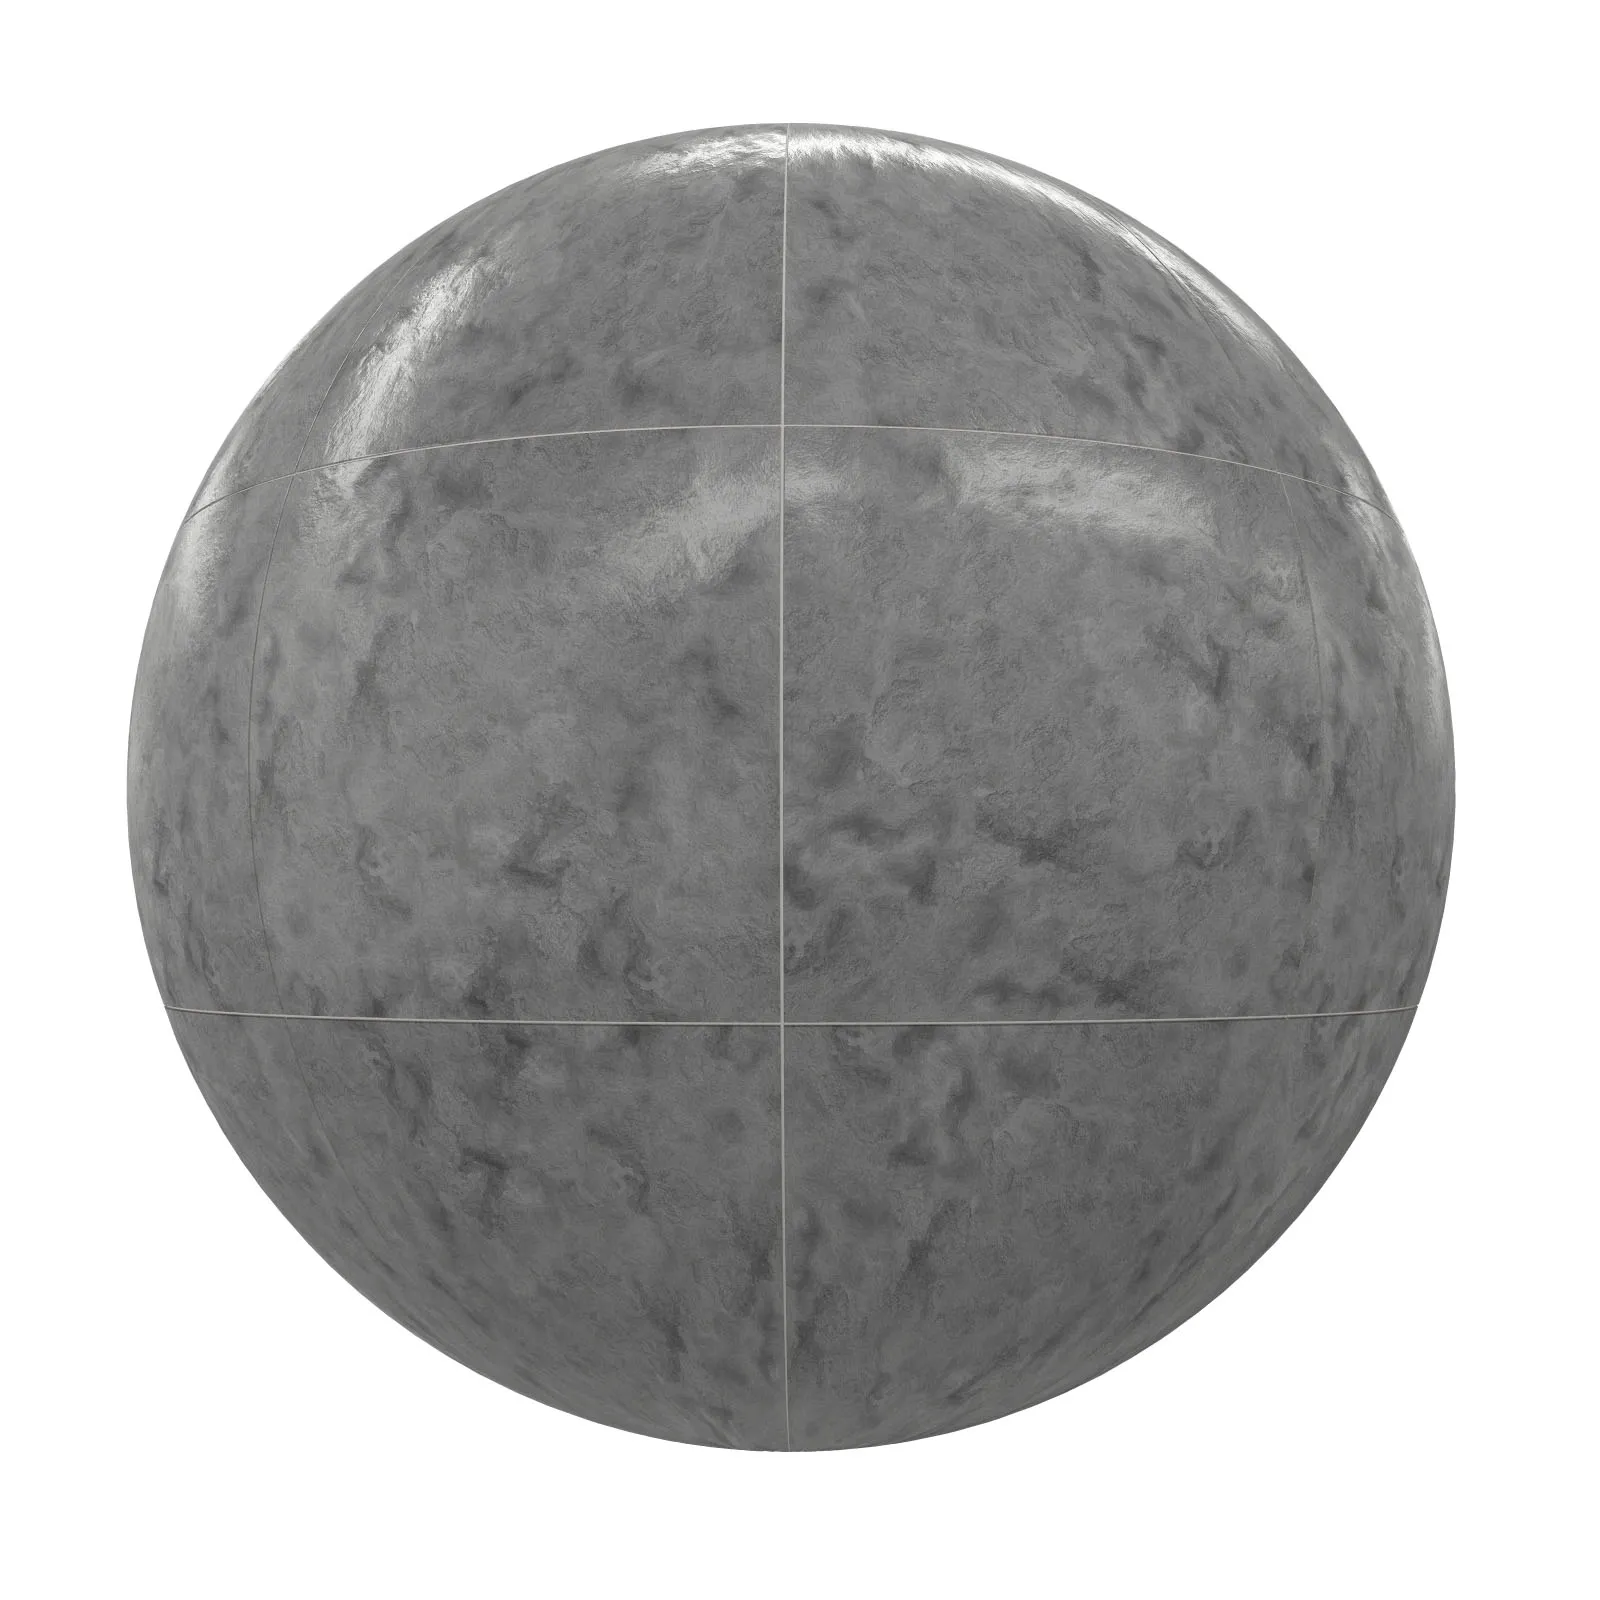 PBR CGAXIS TEXTURES – TILES – Grey Tiles 8